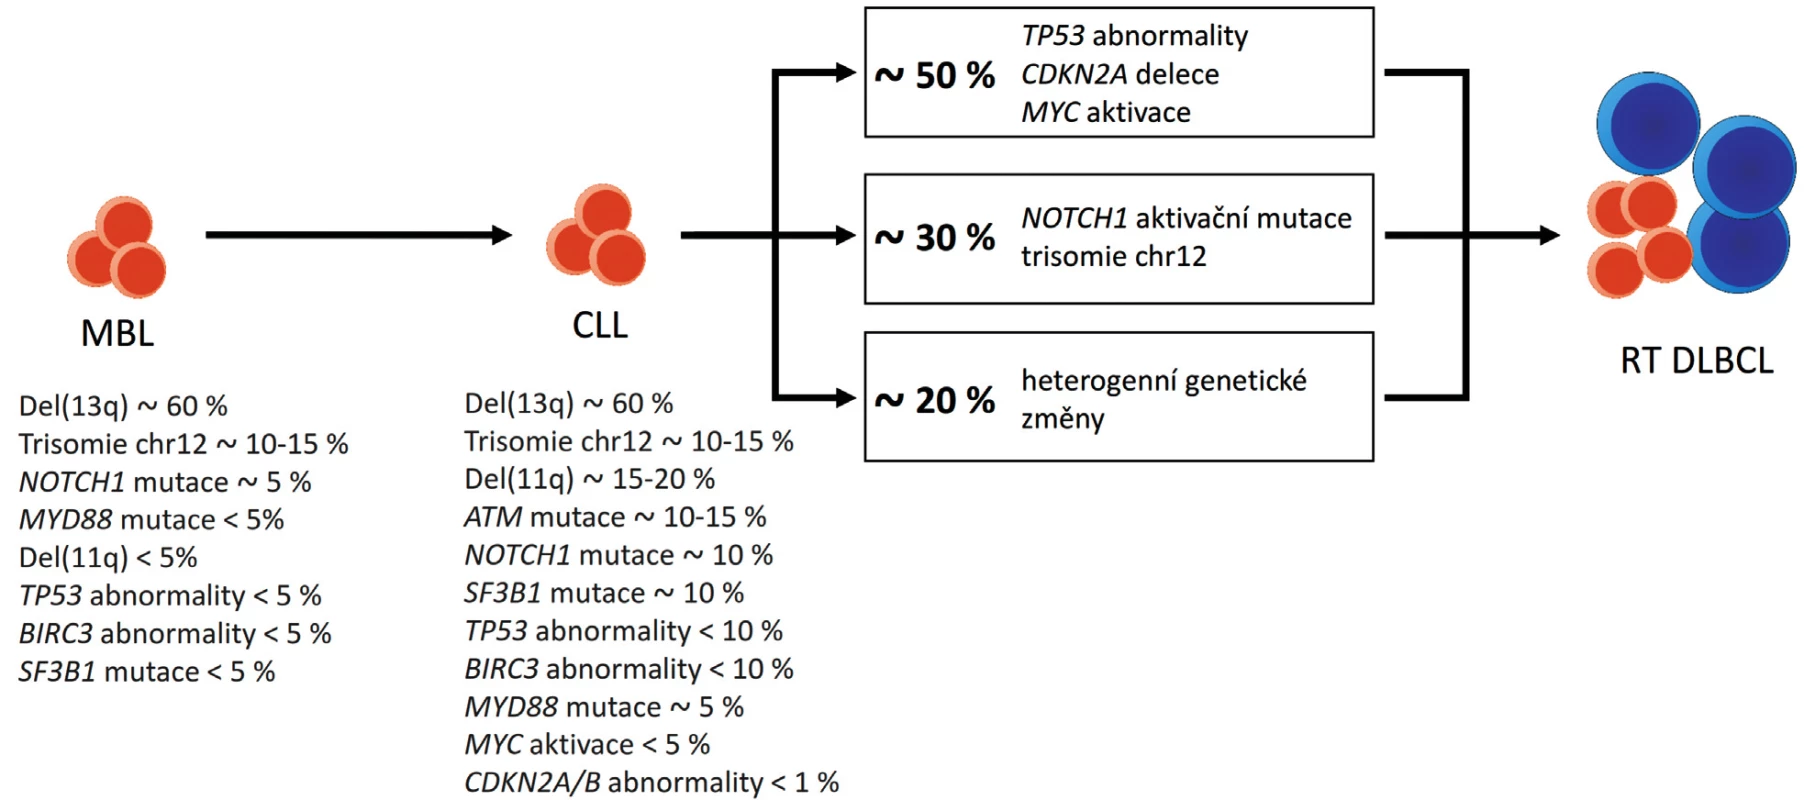 Genetické změny u Richterovy transformace chronické lymfocytární leukemie (CLL) do difuzního velkobuněčného lymfomu (RT DLBCL). Upraveno podle [10, 48, 49].